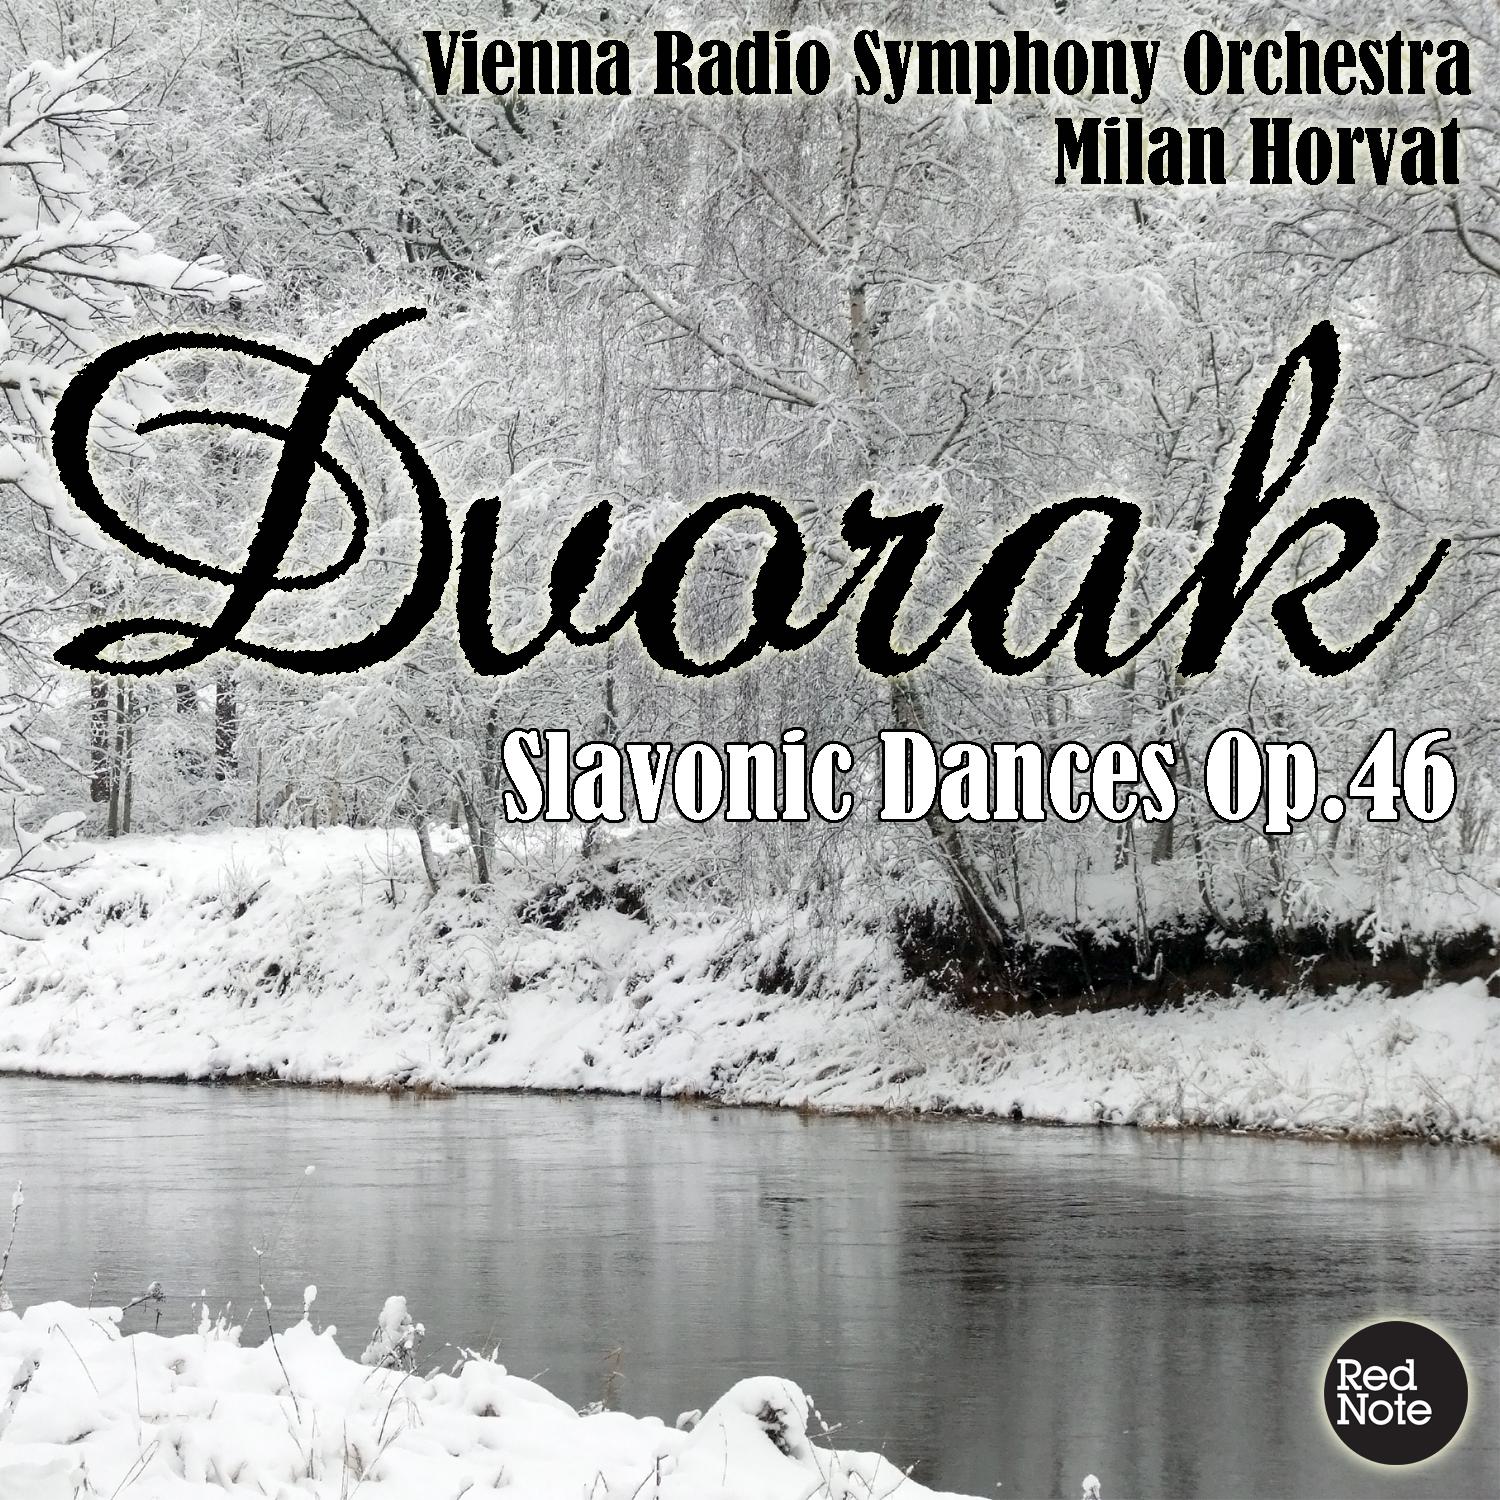 Dvorak: Slavonic Dances Op.46